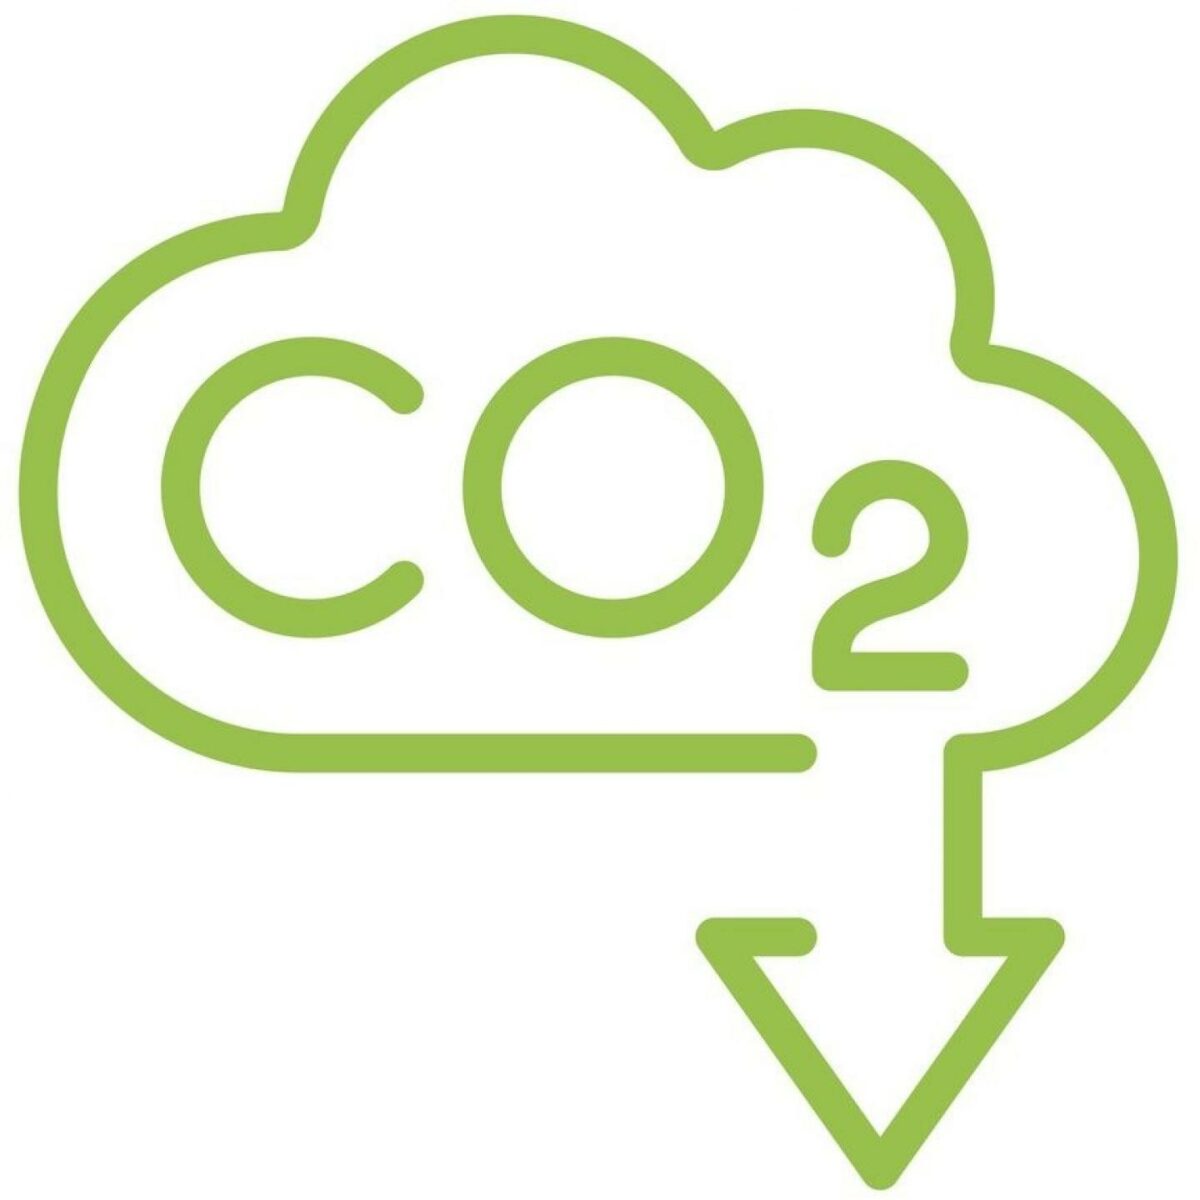 CO2-fangst, -anvendelse og -lagring er på dagsordenen på dagens møde i Nordjylland, hvor bl.a. erhvervsminister Morten Bødskov deltager, for 'lagring af CO2 er en væsentlig del af løsningen til at nå regeringens ambitiøse mål om klimaneutralitet i 2045,' som han siger.